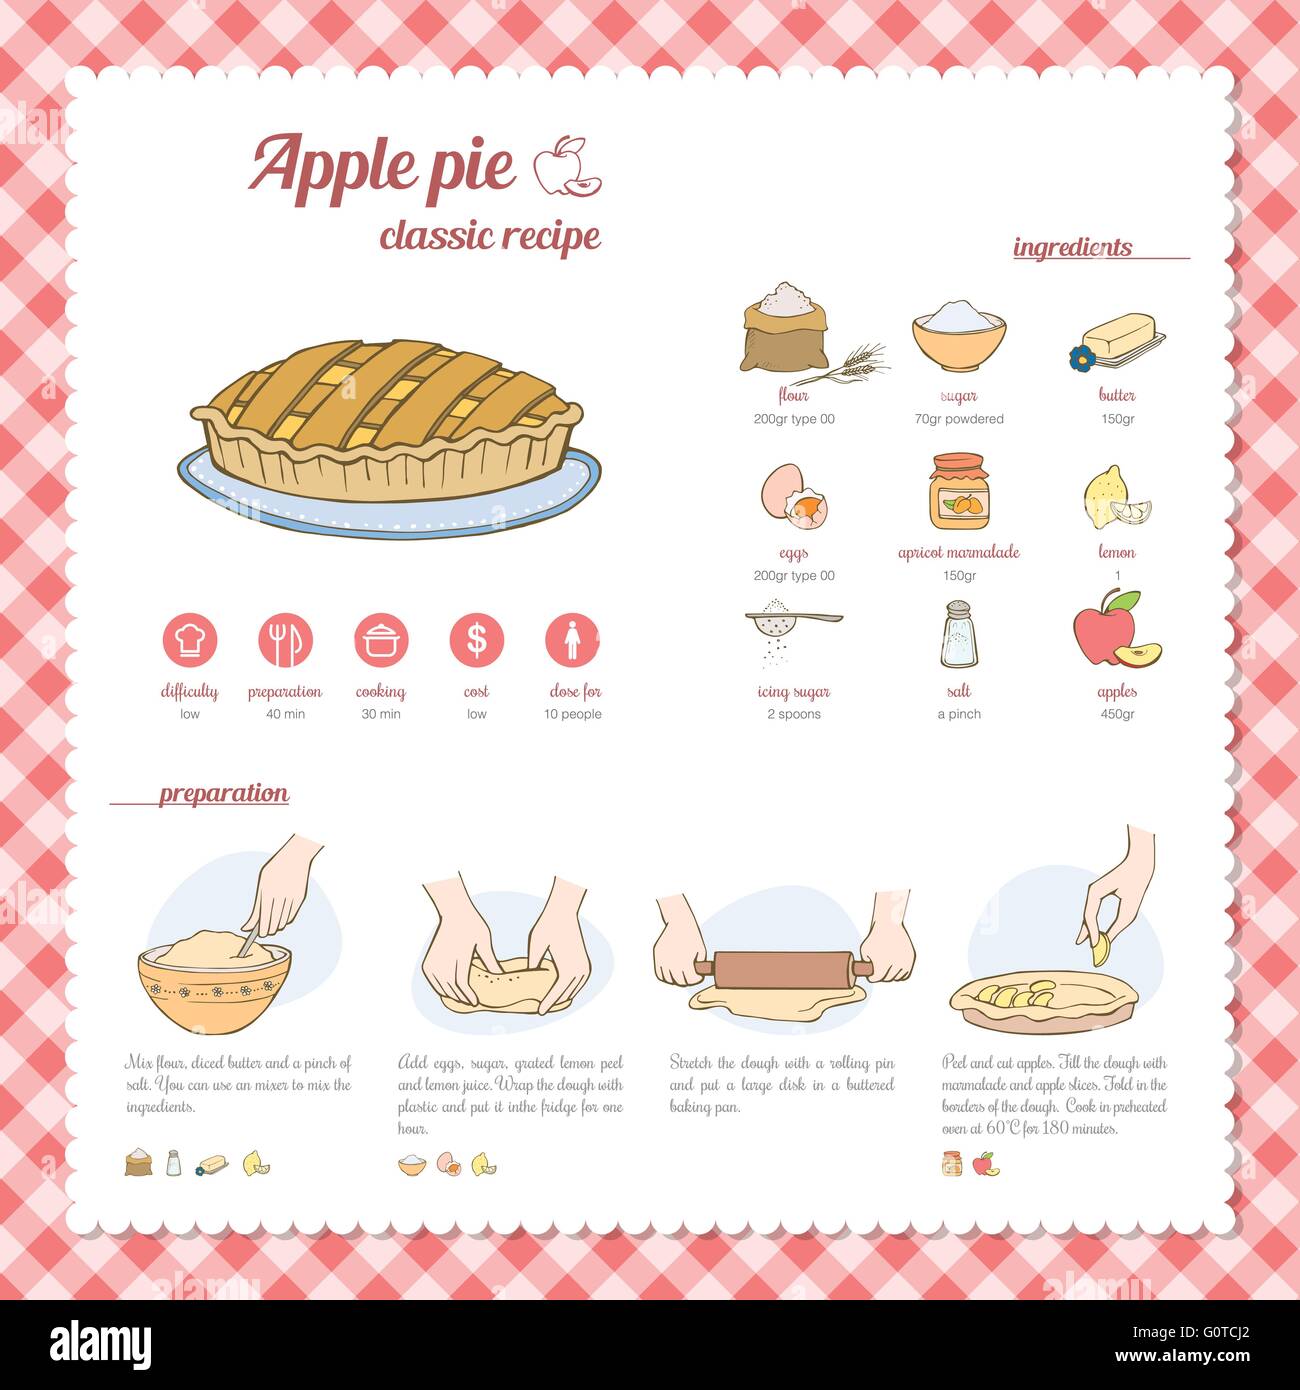 Apple Pie Recipe With Procedure And Ingredients Stock Vector Art 86D